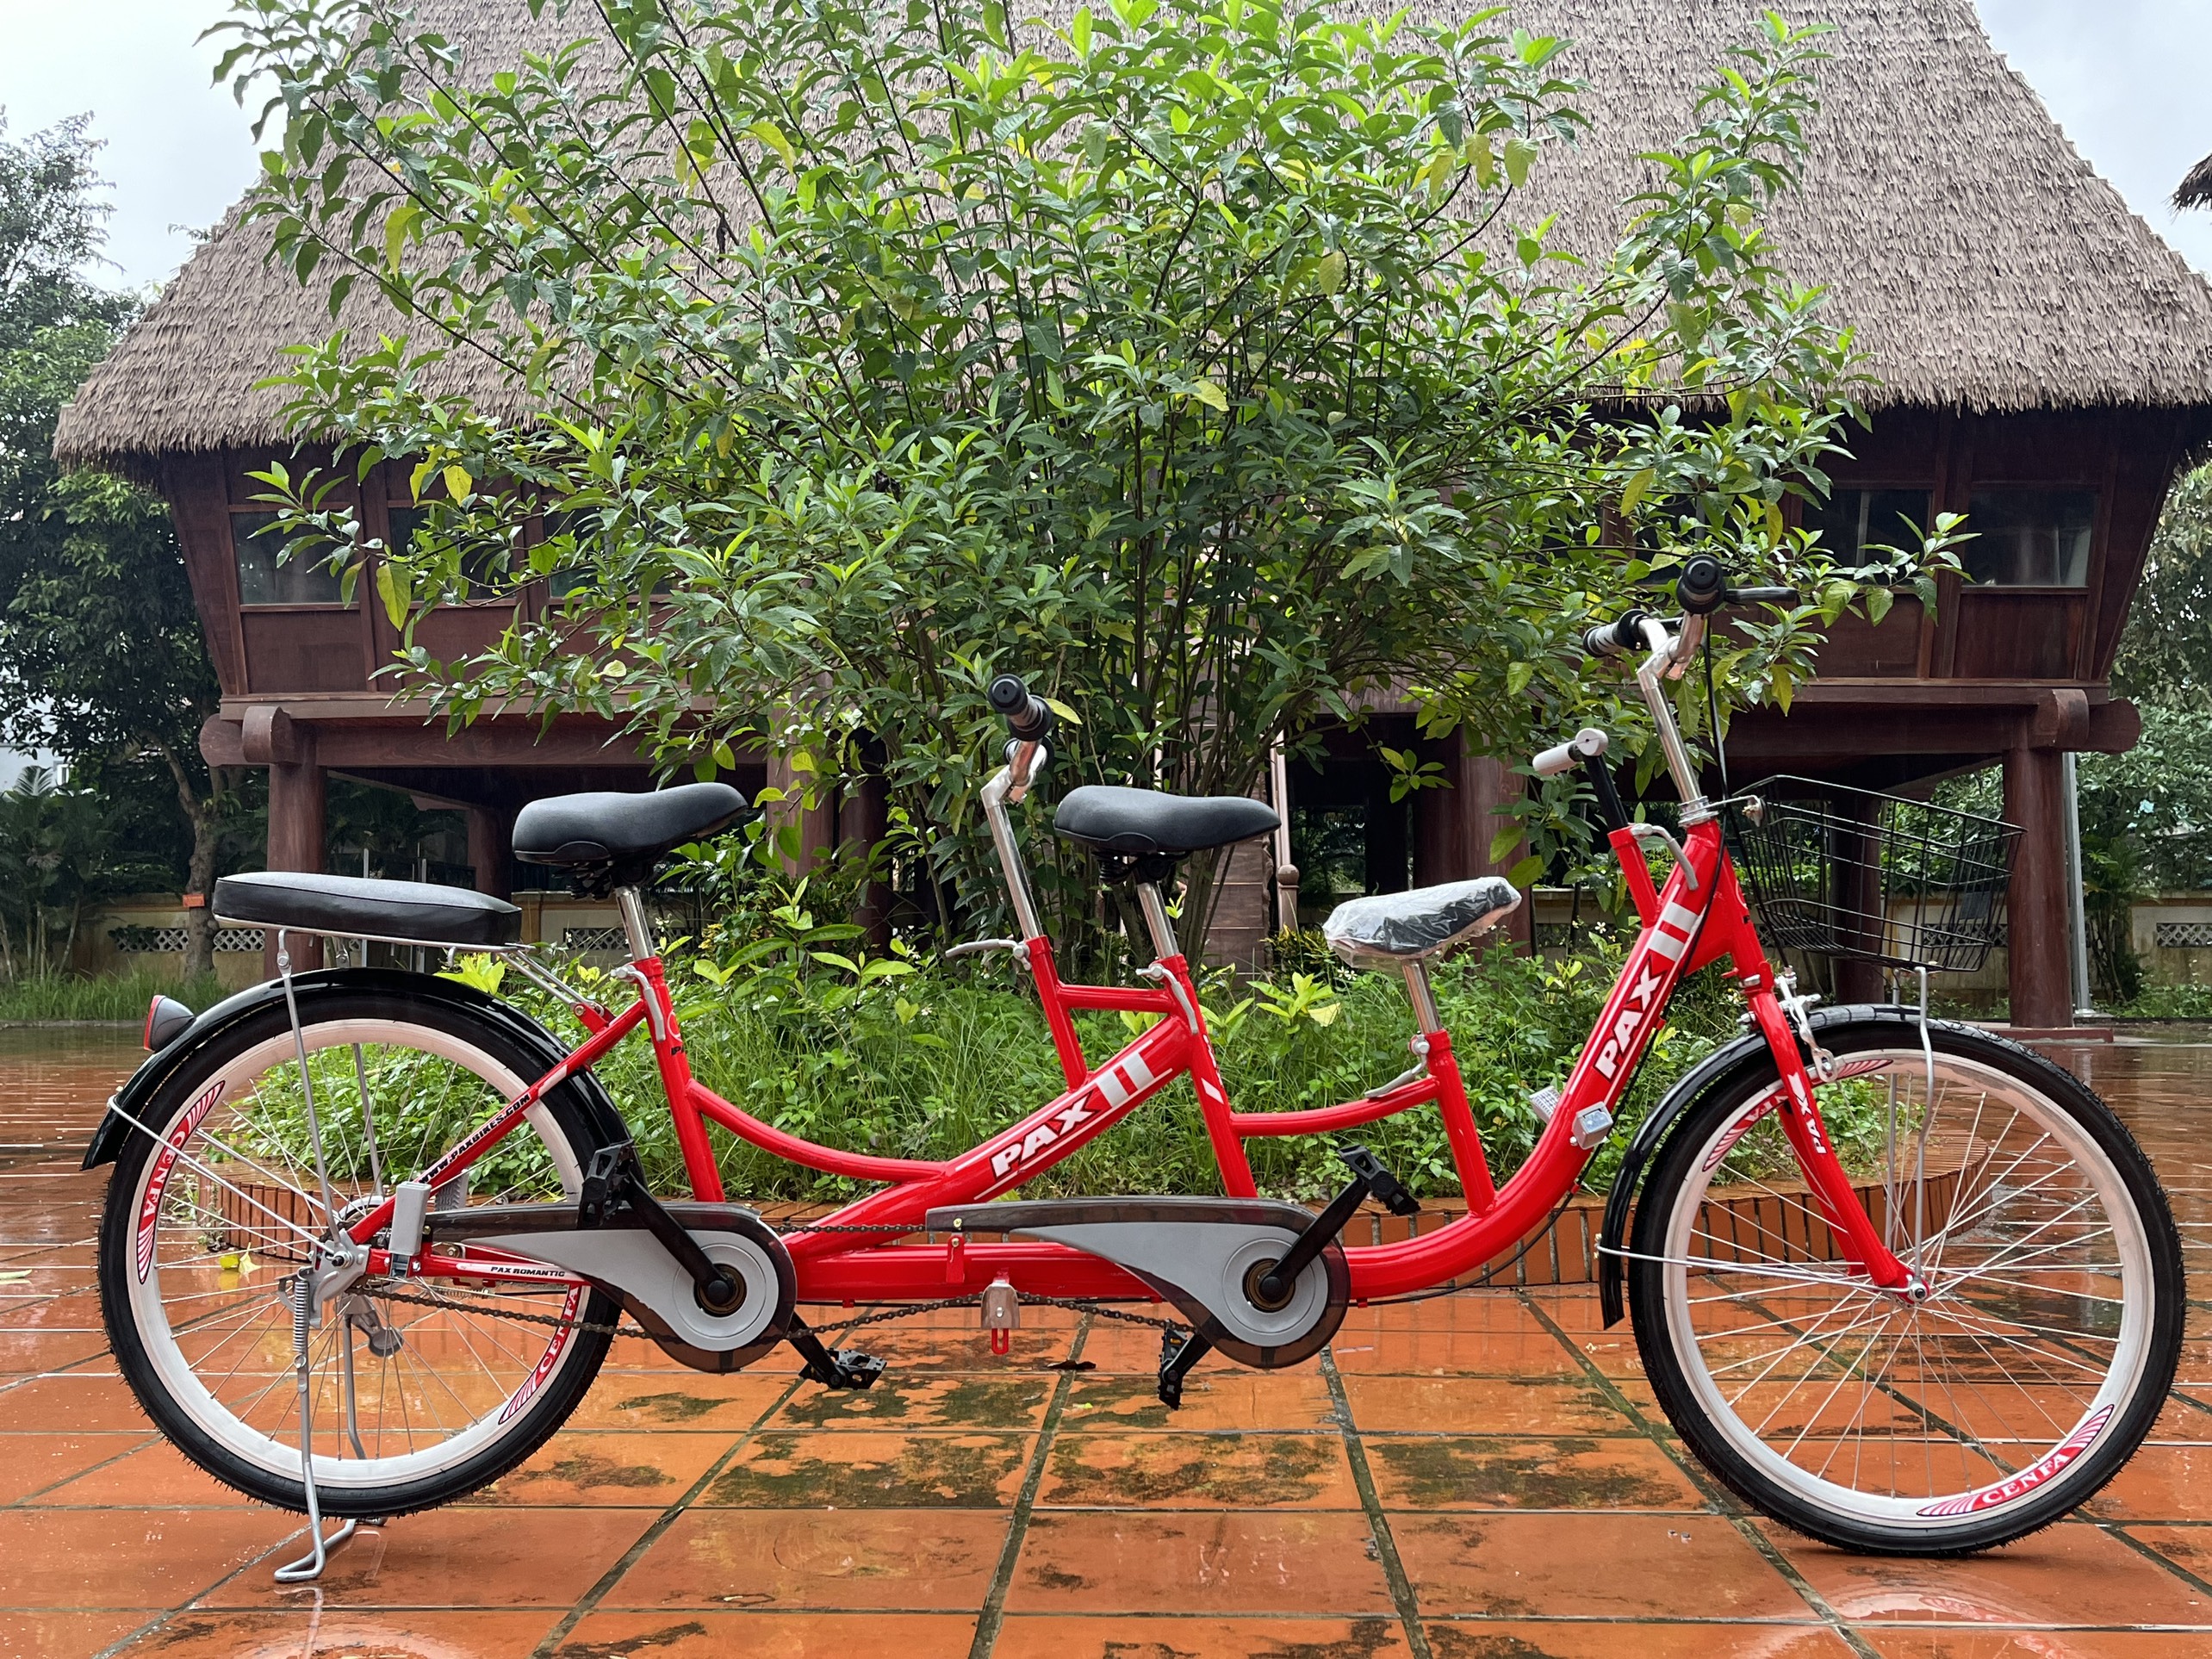 Xe đạp đôi gia đình cao cấp PAX 2 Sport - Kiểu dáng thể thao - Hai người đạp tự do - Trọng tải 300kg - Có thêm ghế cho bé